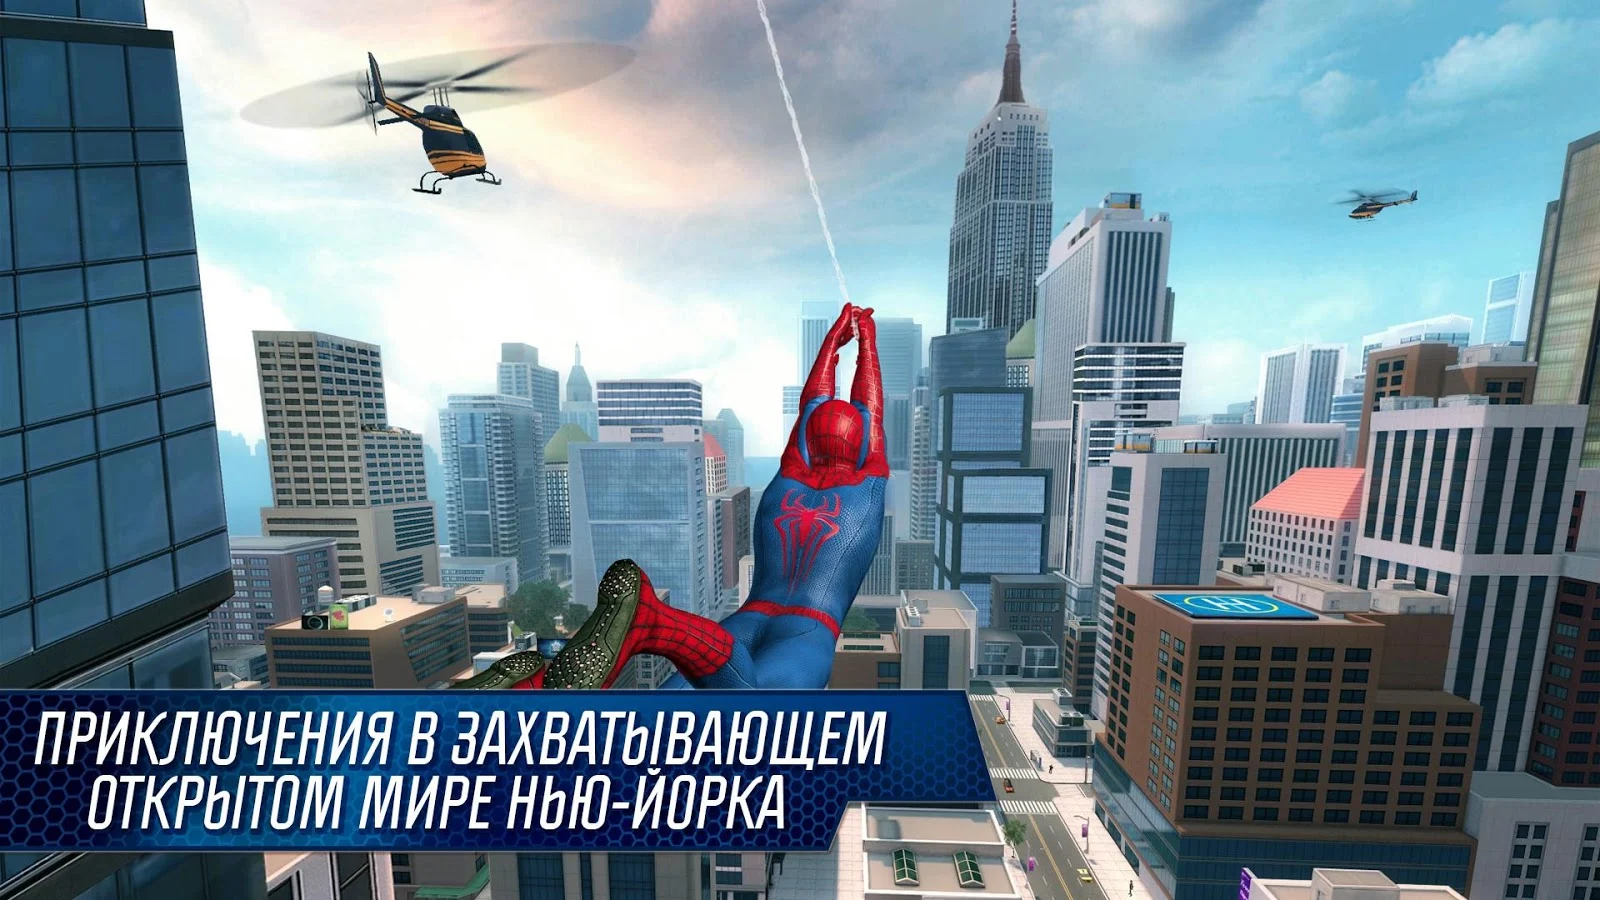 Новый Человек-паук 2 - screenshot